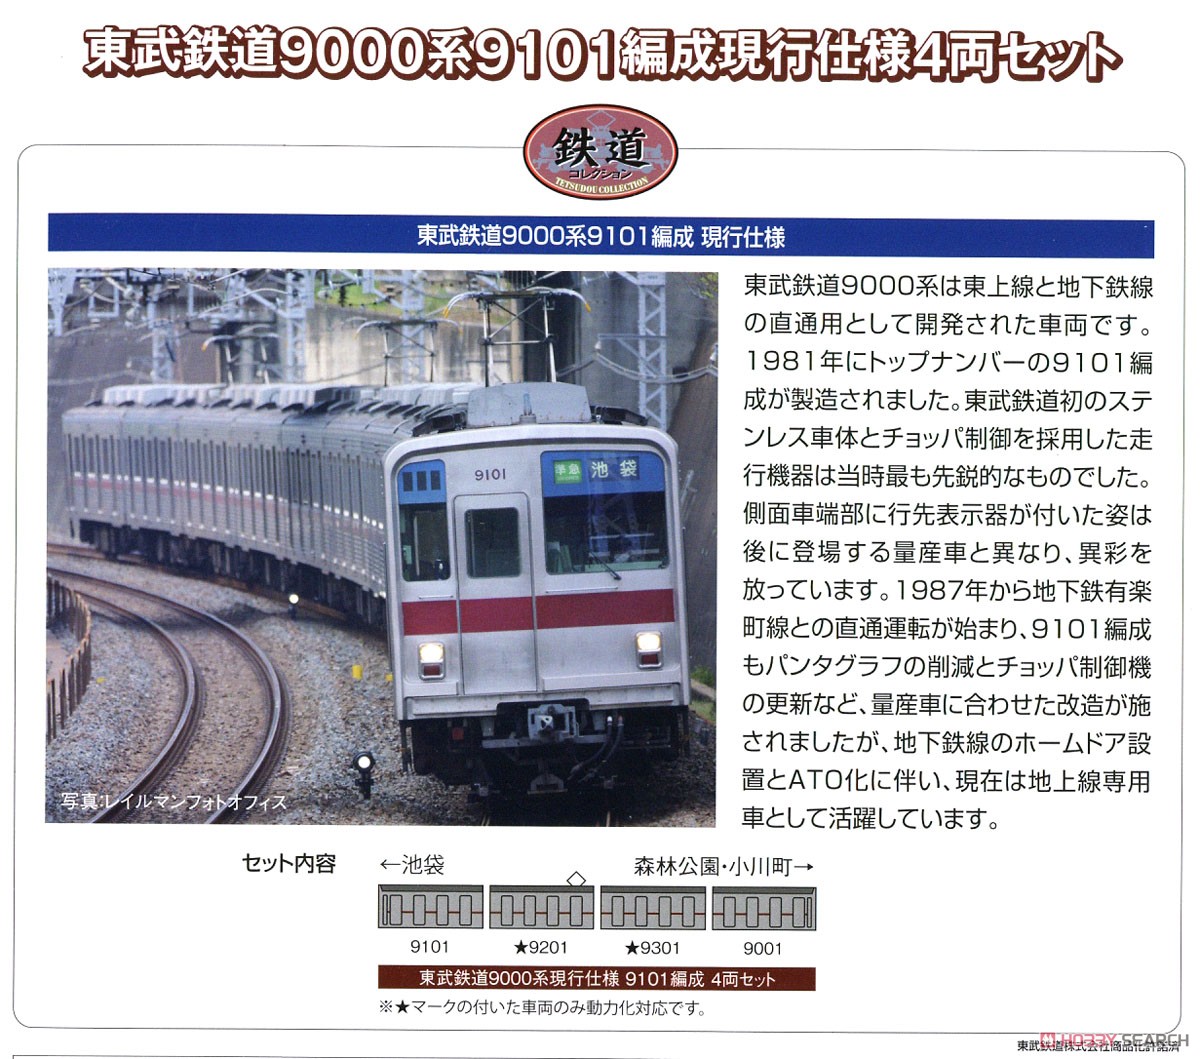 鉄道コレクション 東武鉄道 9000系 9101編成 現行仕様 (4両セット) (鉄道模型) 解説1